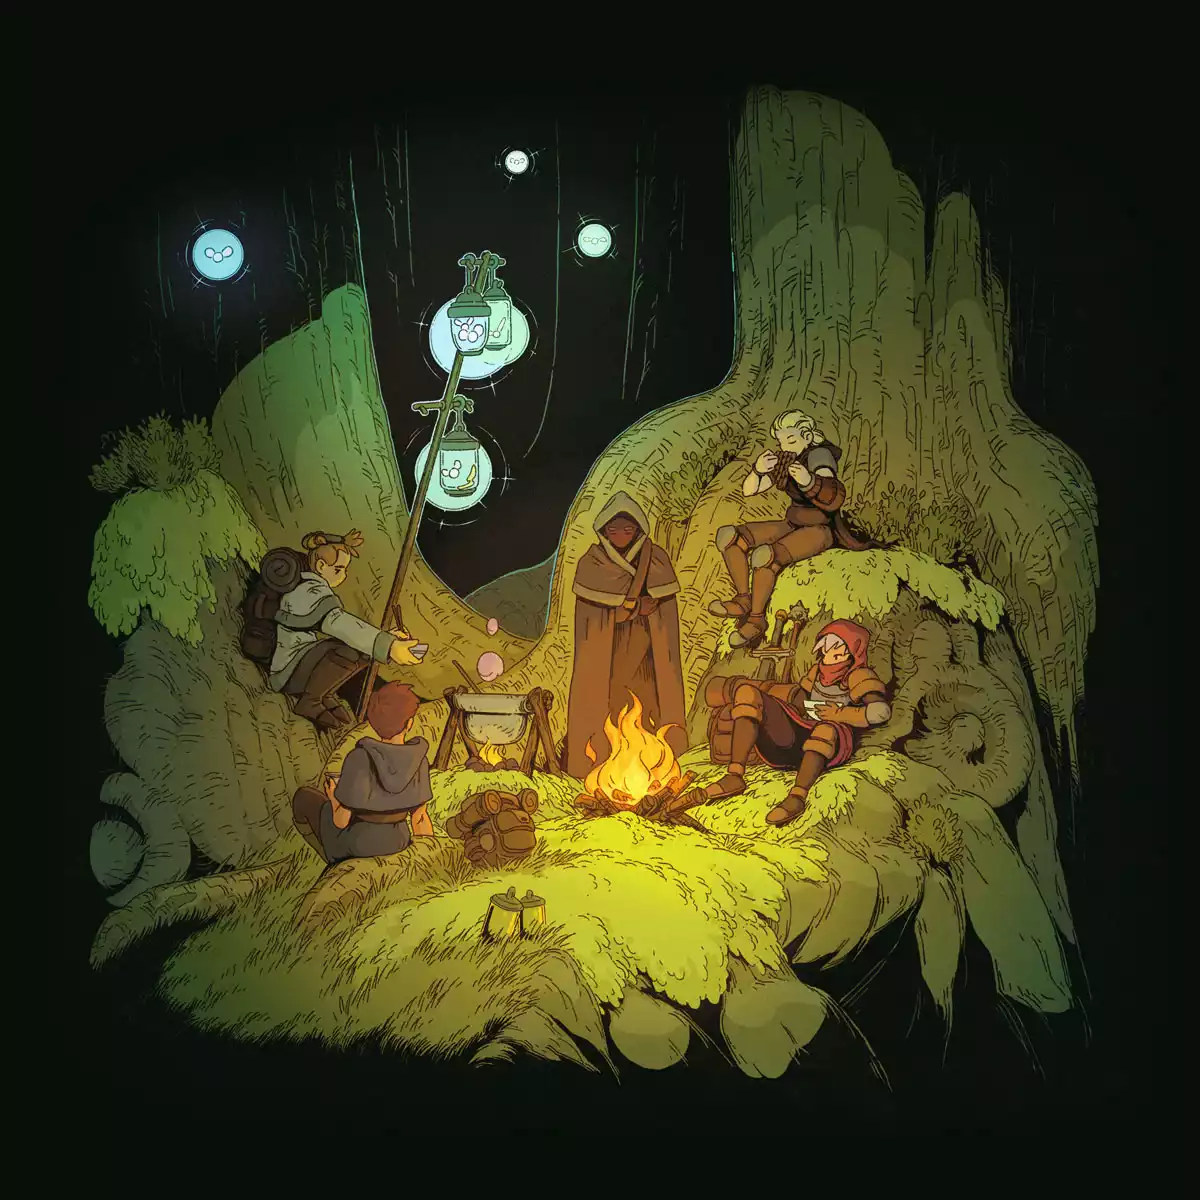 Arte de do estúdio Gardens apresentando uma série der personagens de RPG em um acampamento.